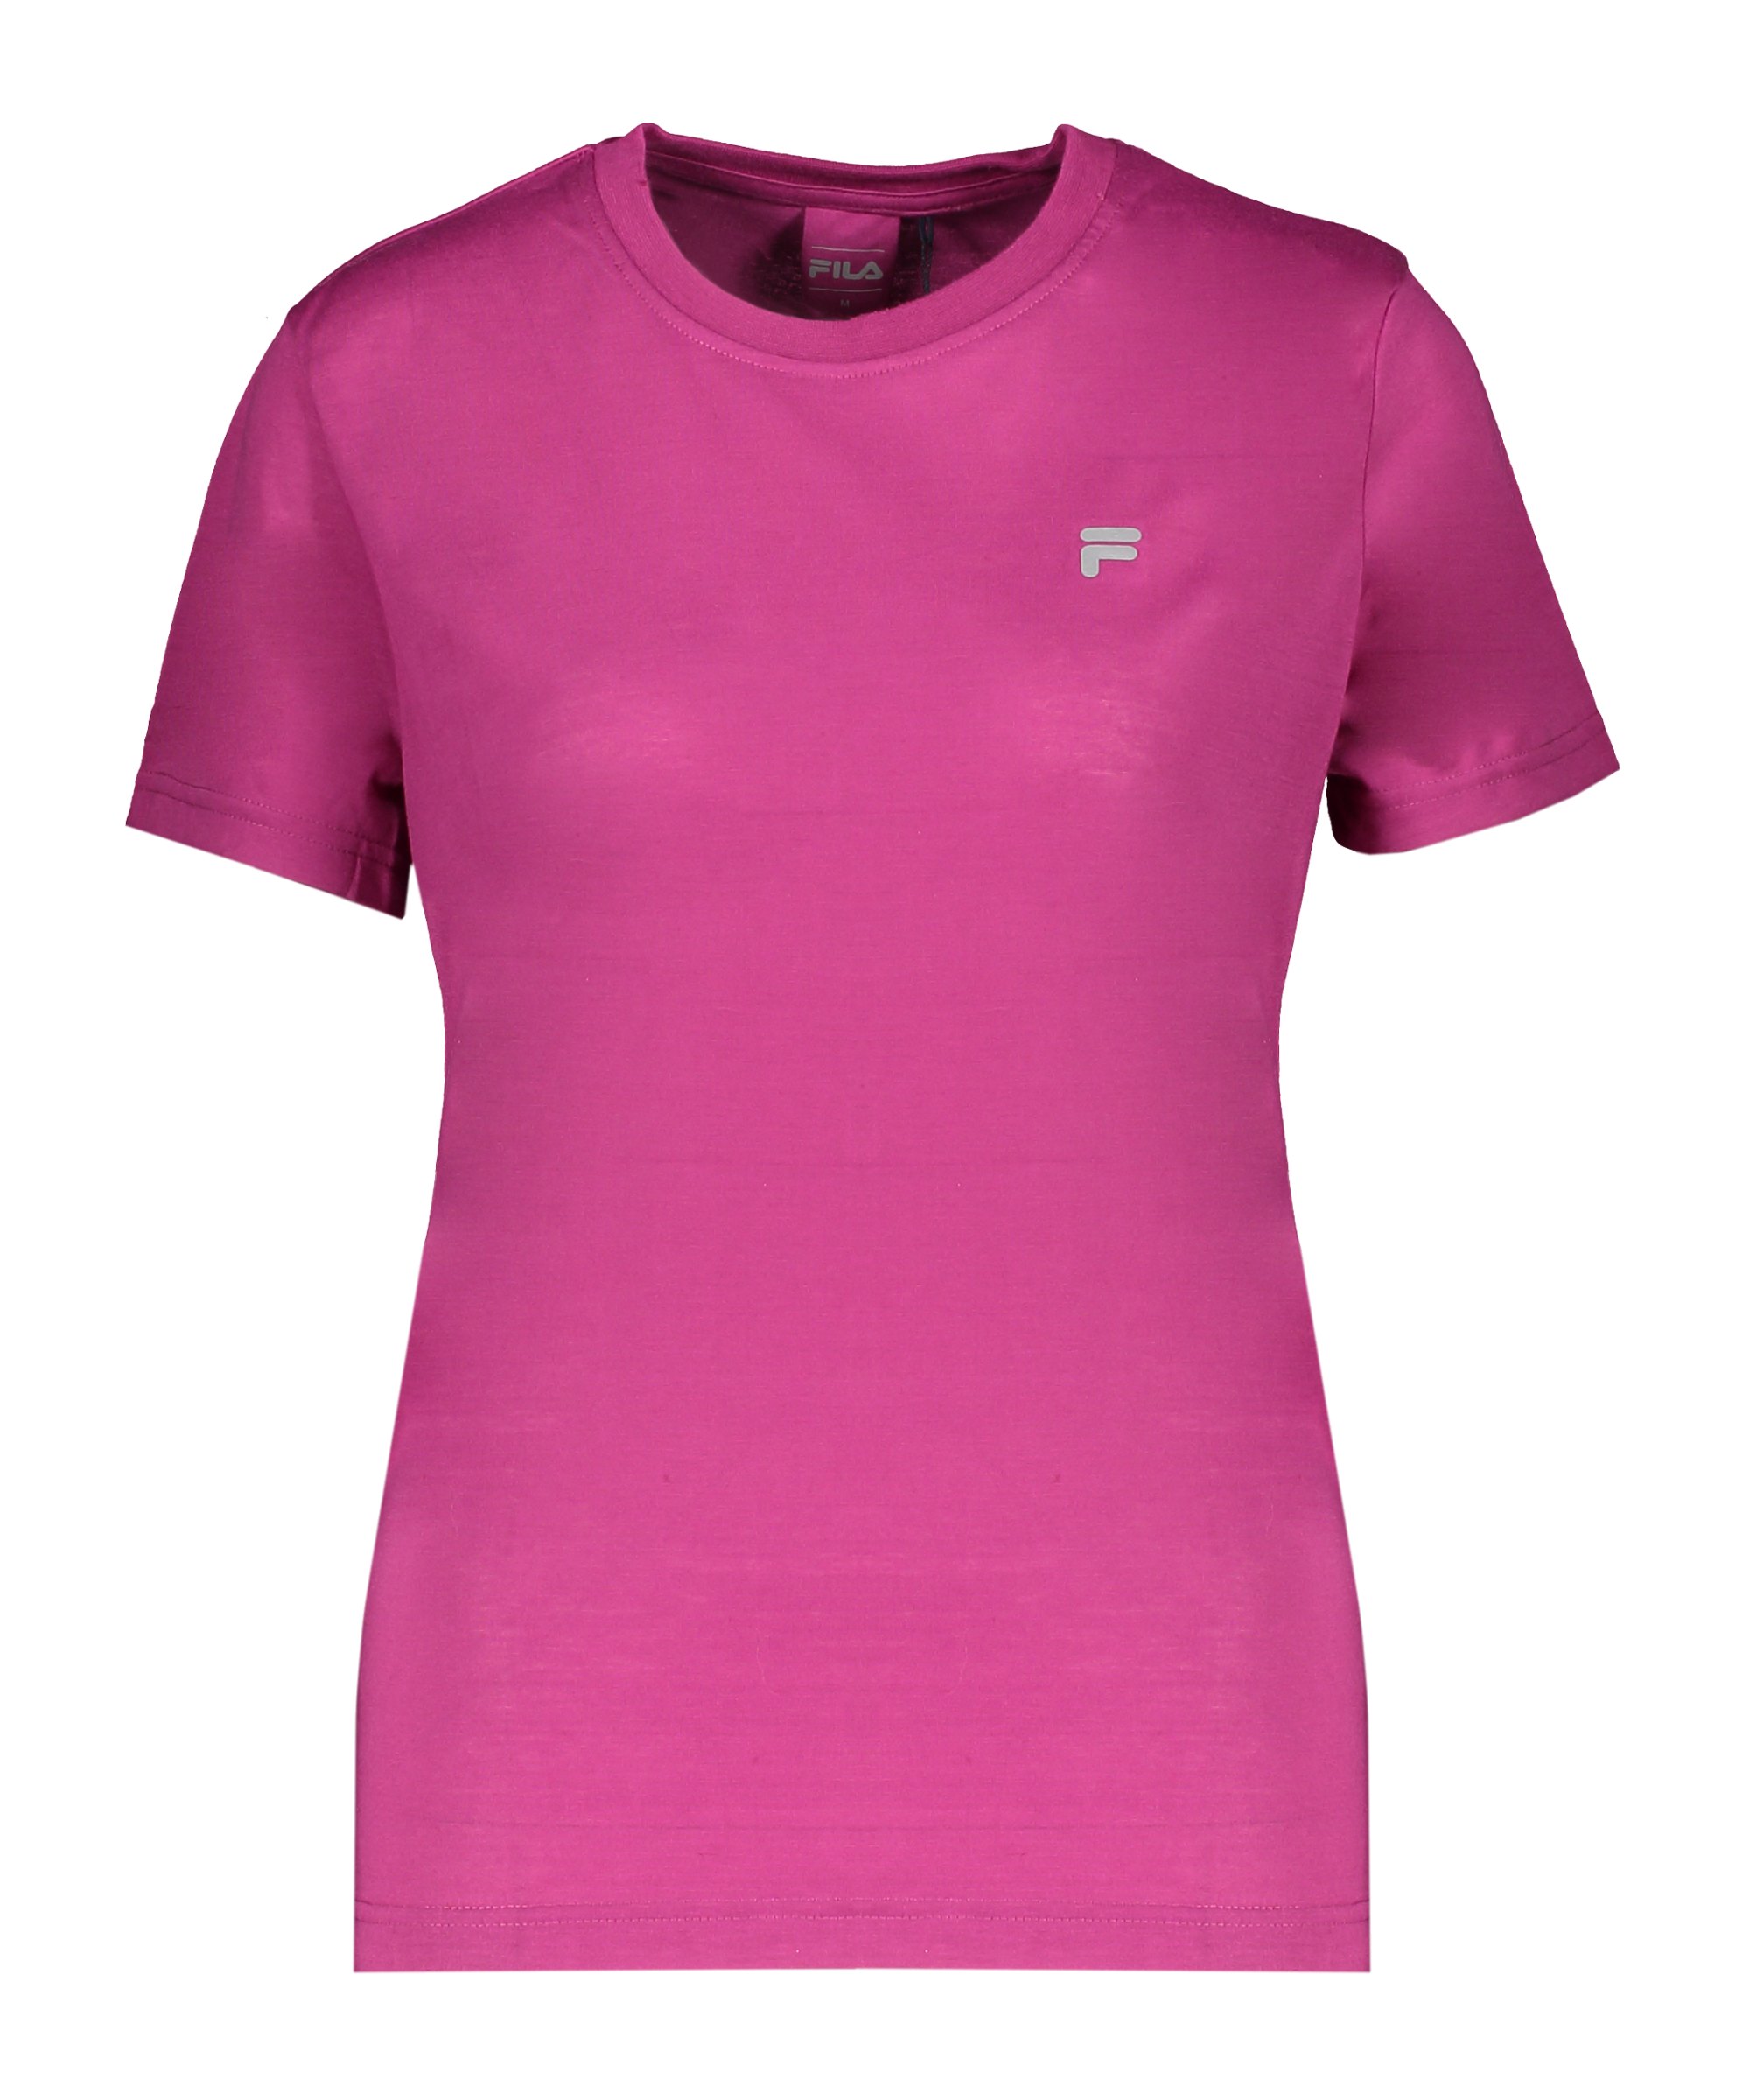 FILA Rabaraba T-Shirt Damen Pink F40020 - pink